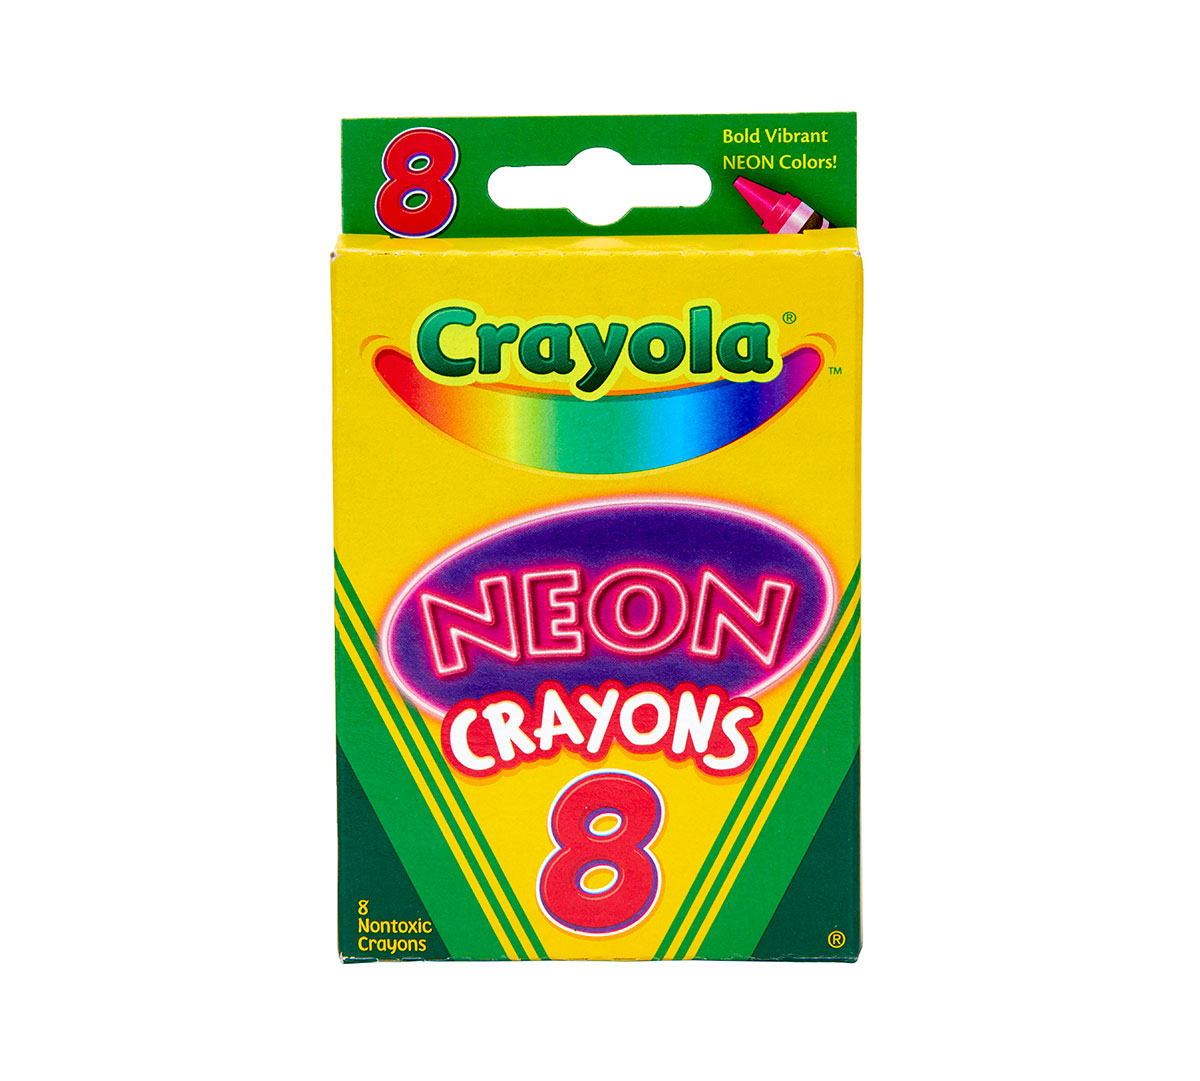 Neon Crayons, 8 Count Crayola Crayons, Crayola.com